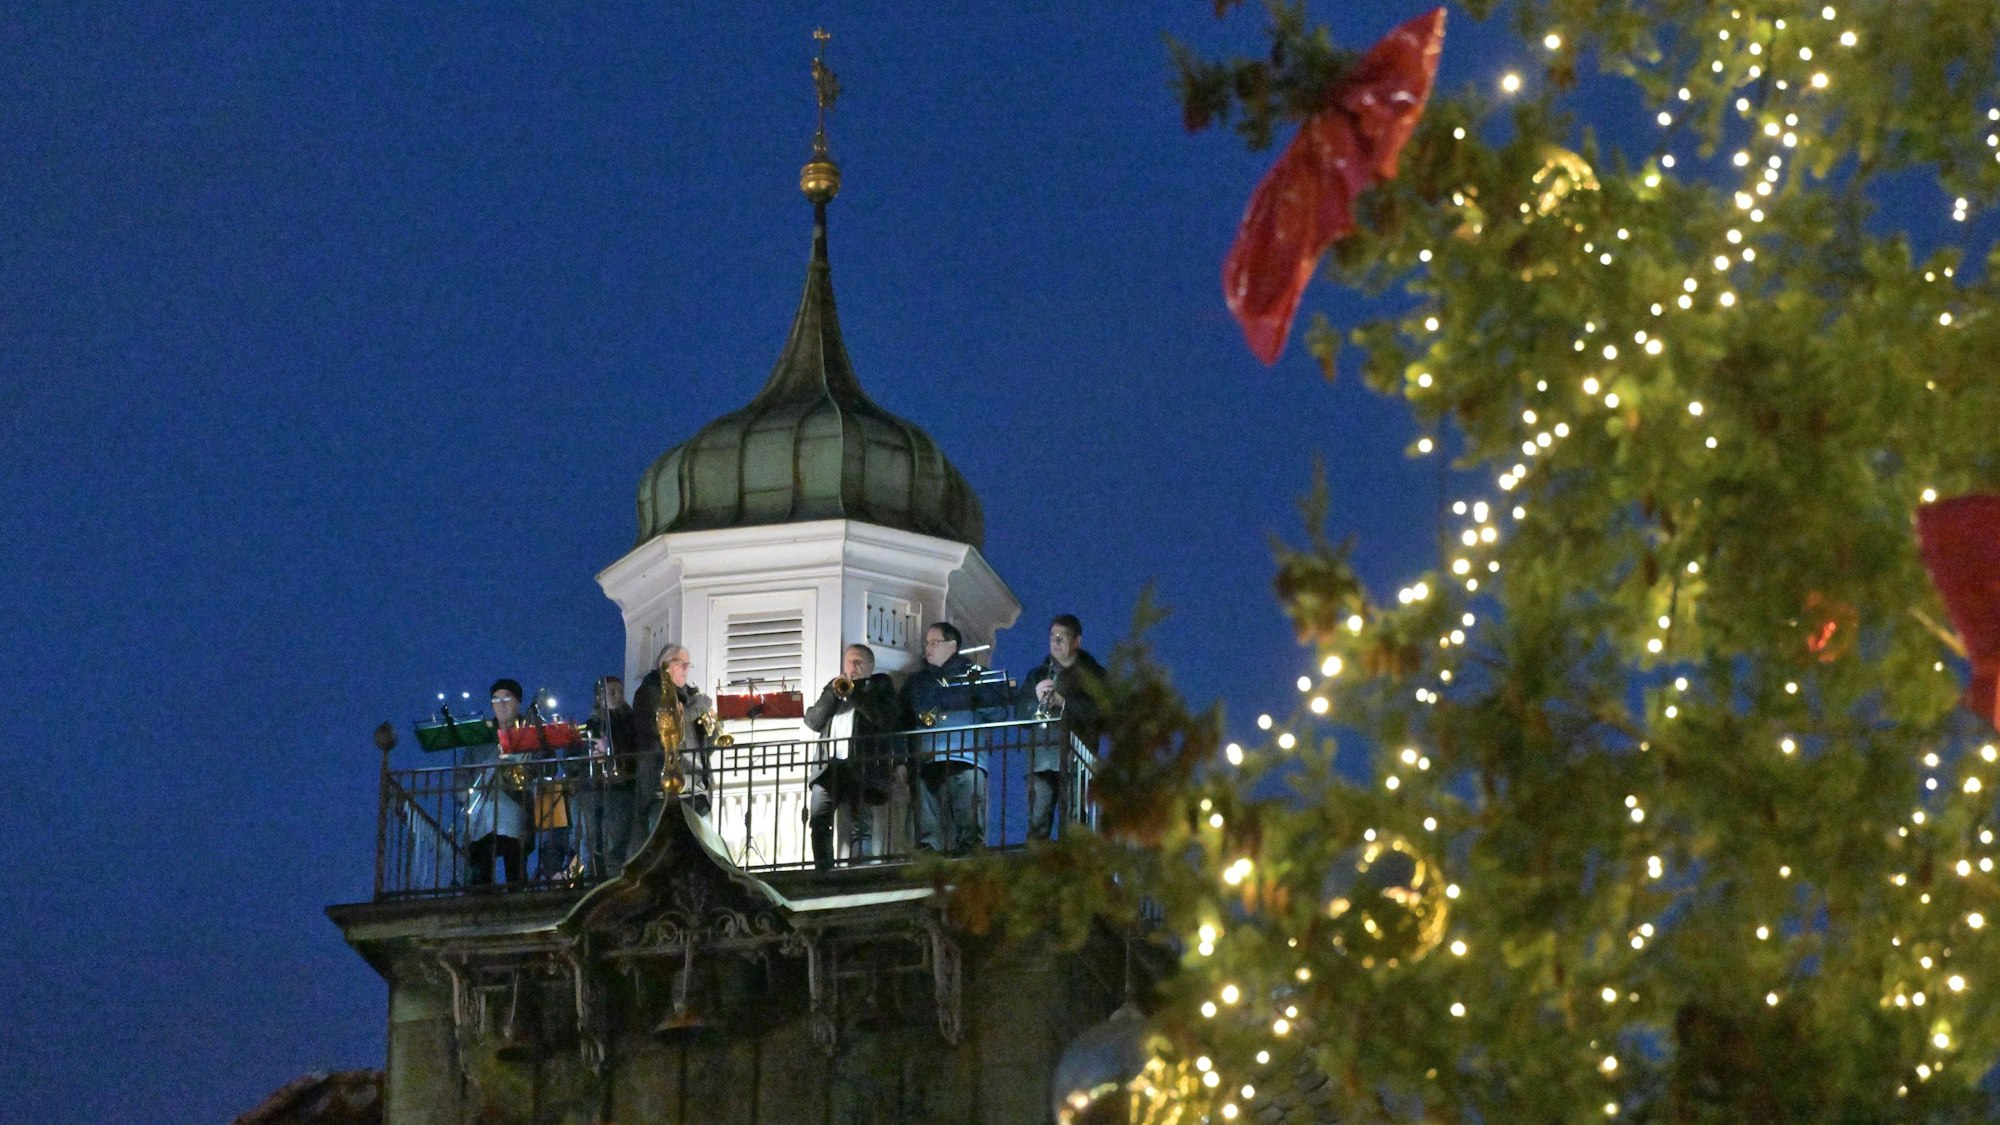 Musiker spielen auf dem Turm des Bergisch Gladbacher Rathauses, im Vordergrund ist ein Weihnachtsbaum zu sehen.